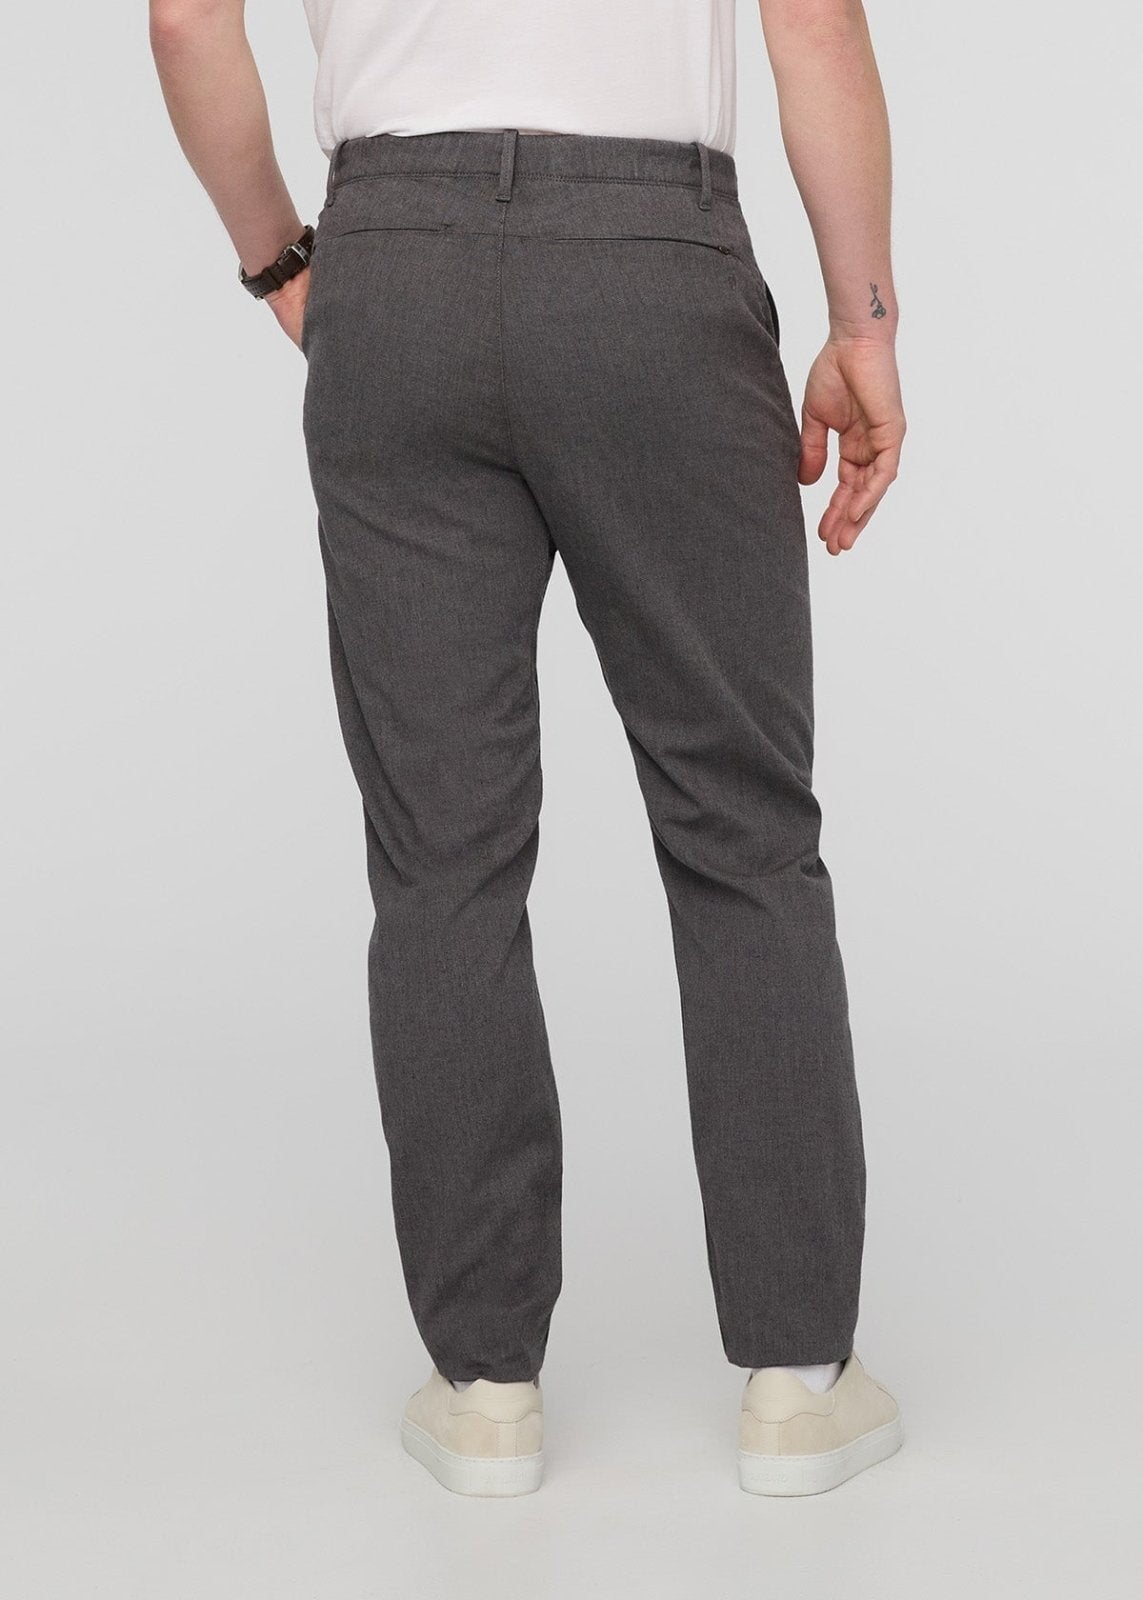 Plaid&Plain Men's Slim Fit Khaki Pants Men's Tapered Chino Pants 8801Black  27X28 at Amazon Men's Clothing store